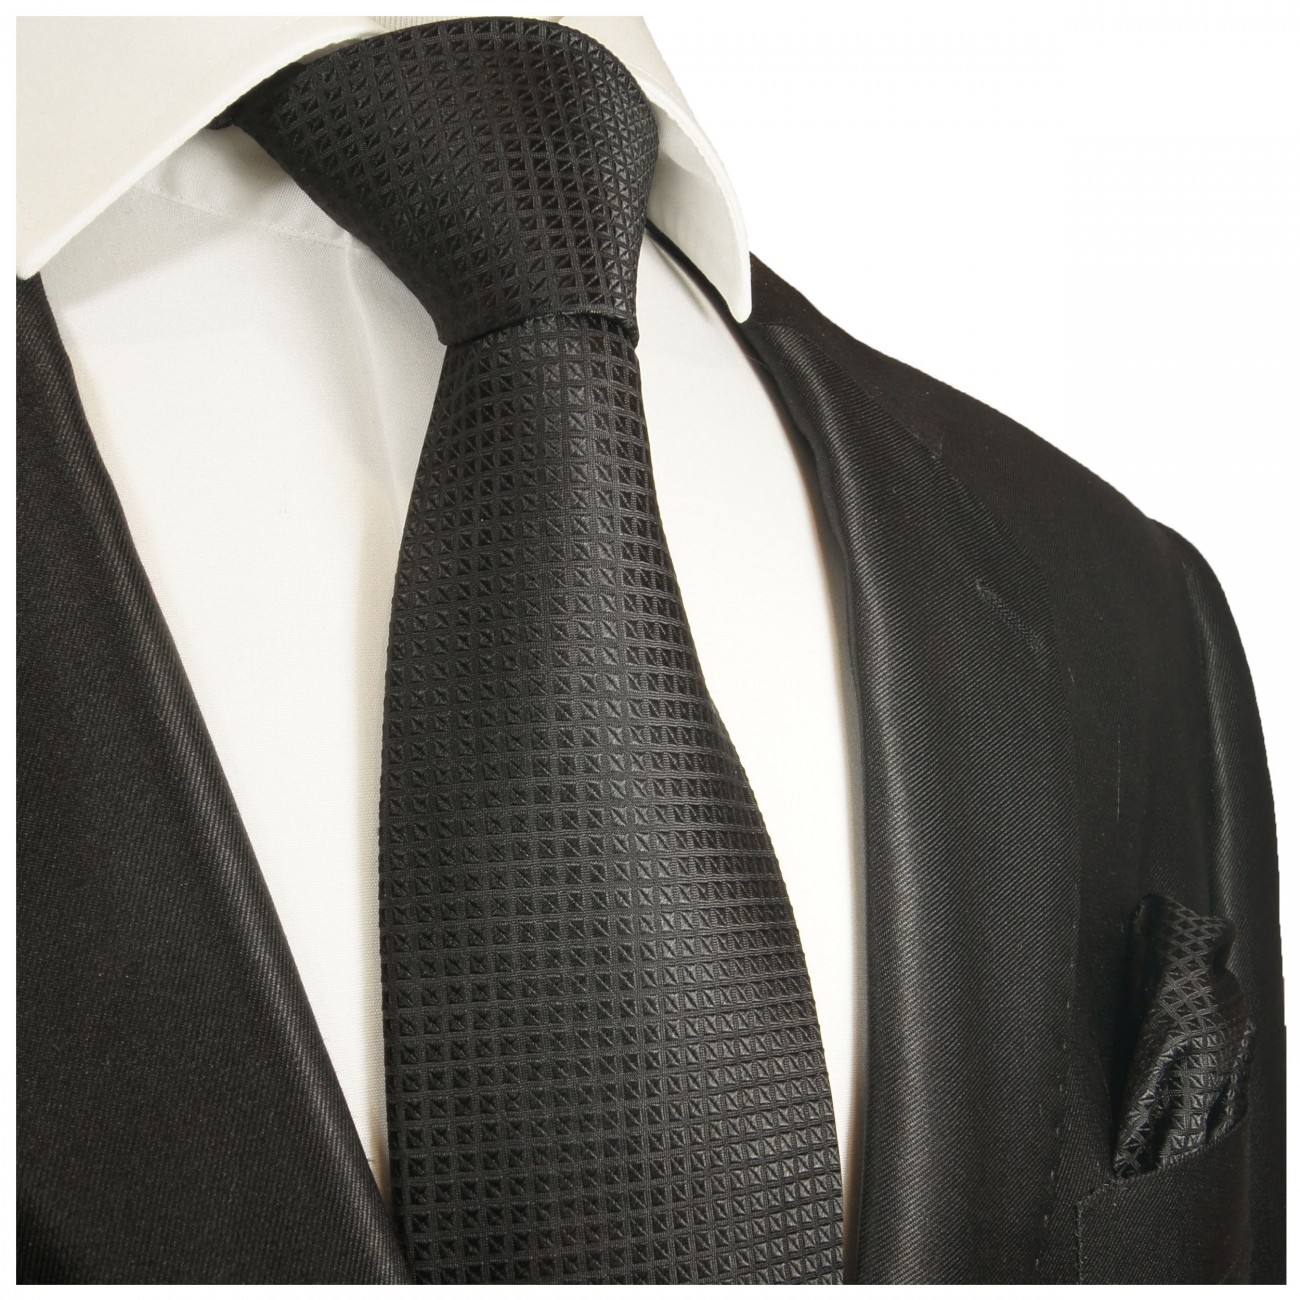 Krawatte schwarz uni kariert Seide mit Einstecktuch